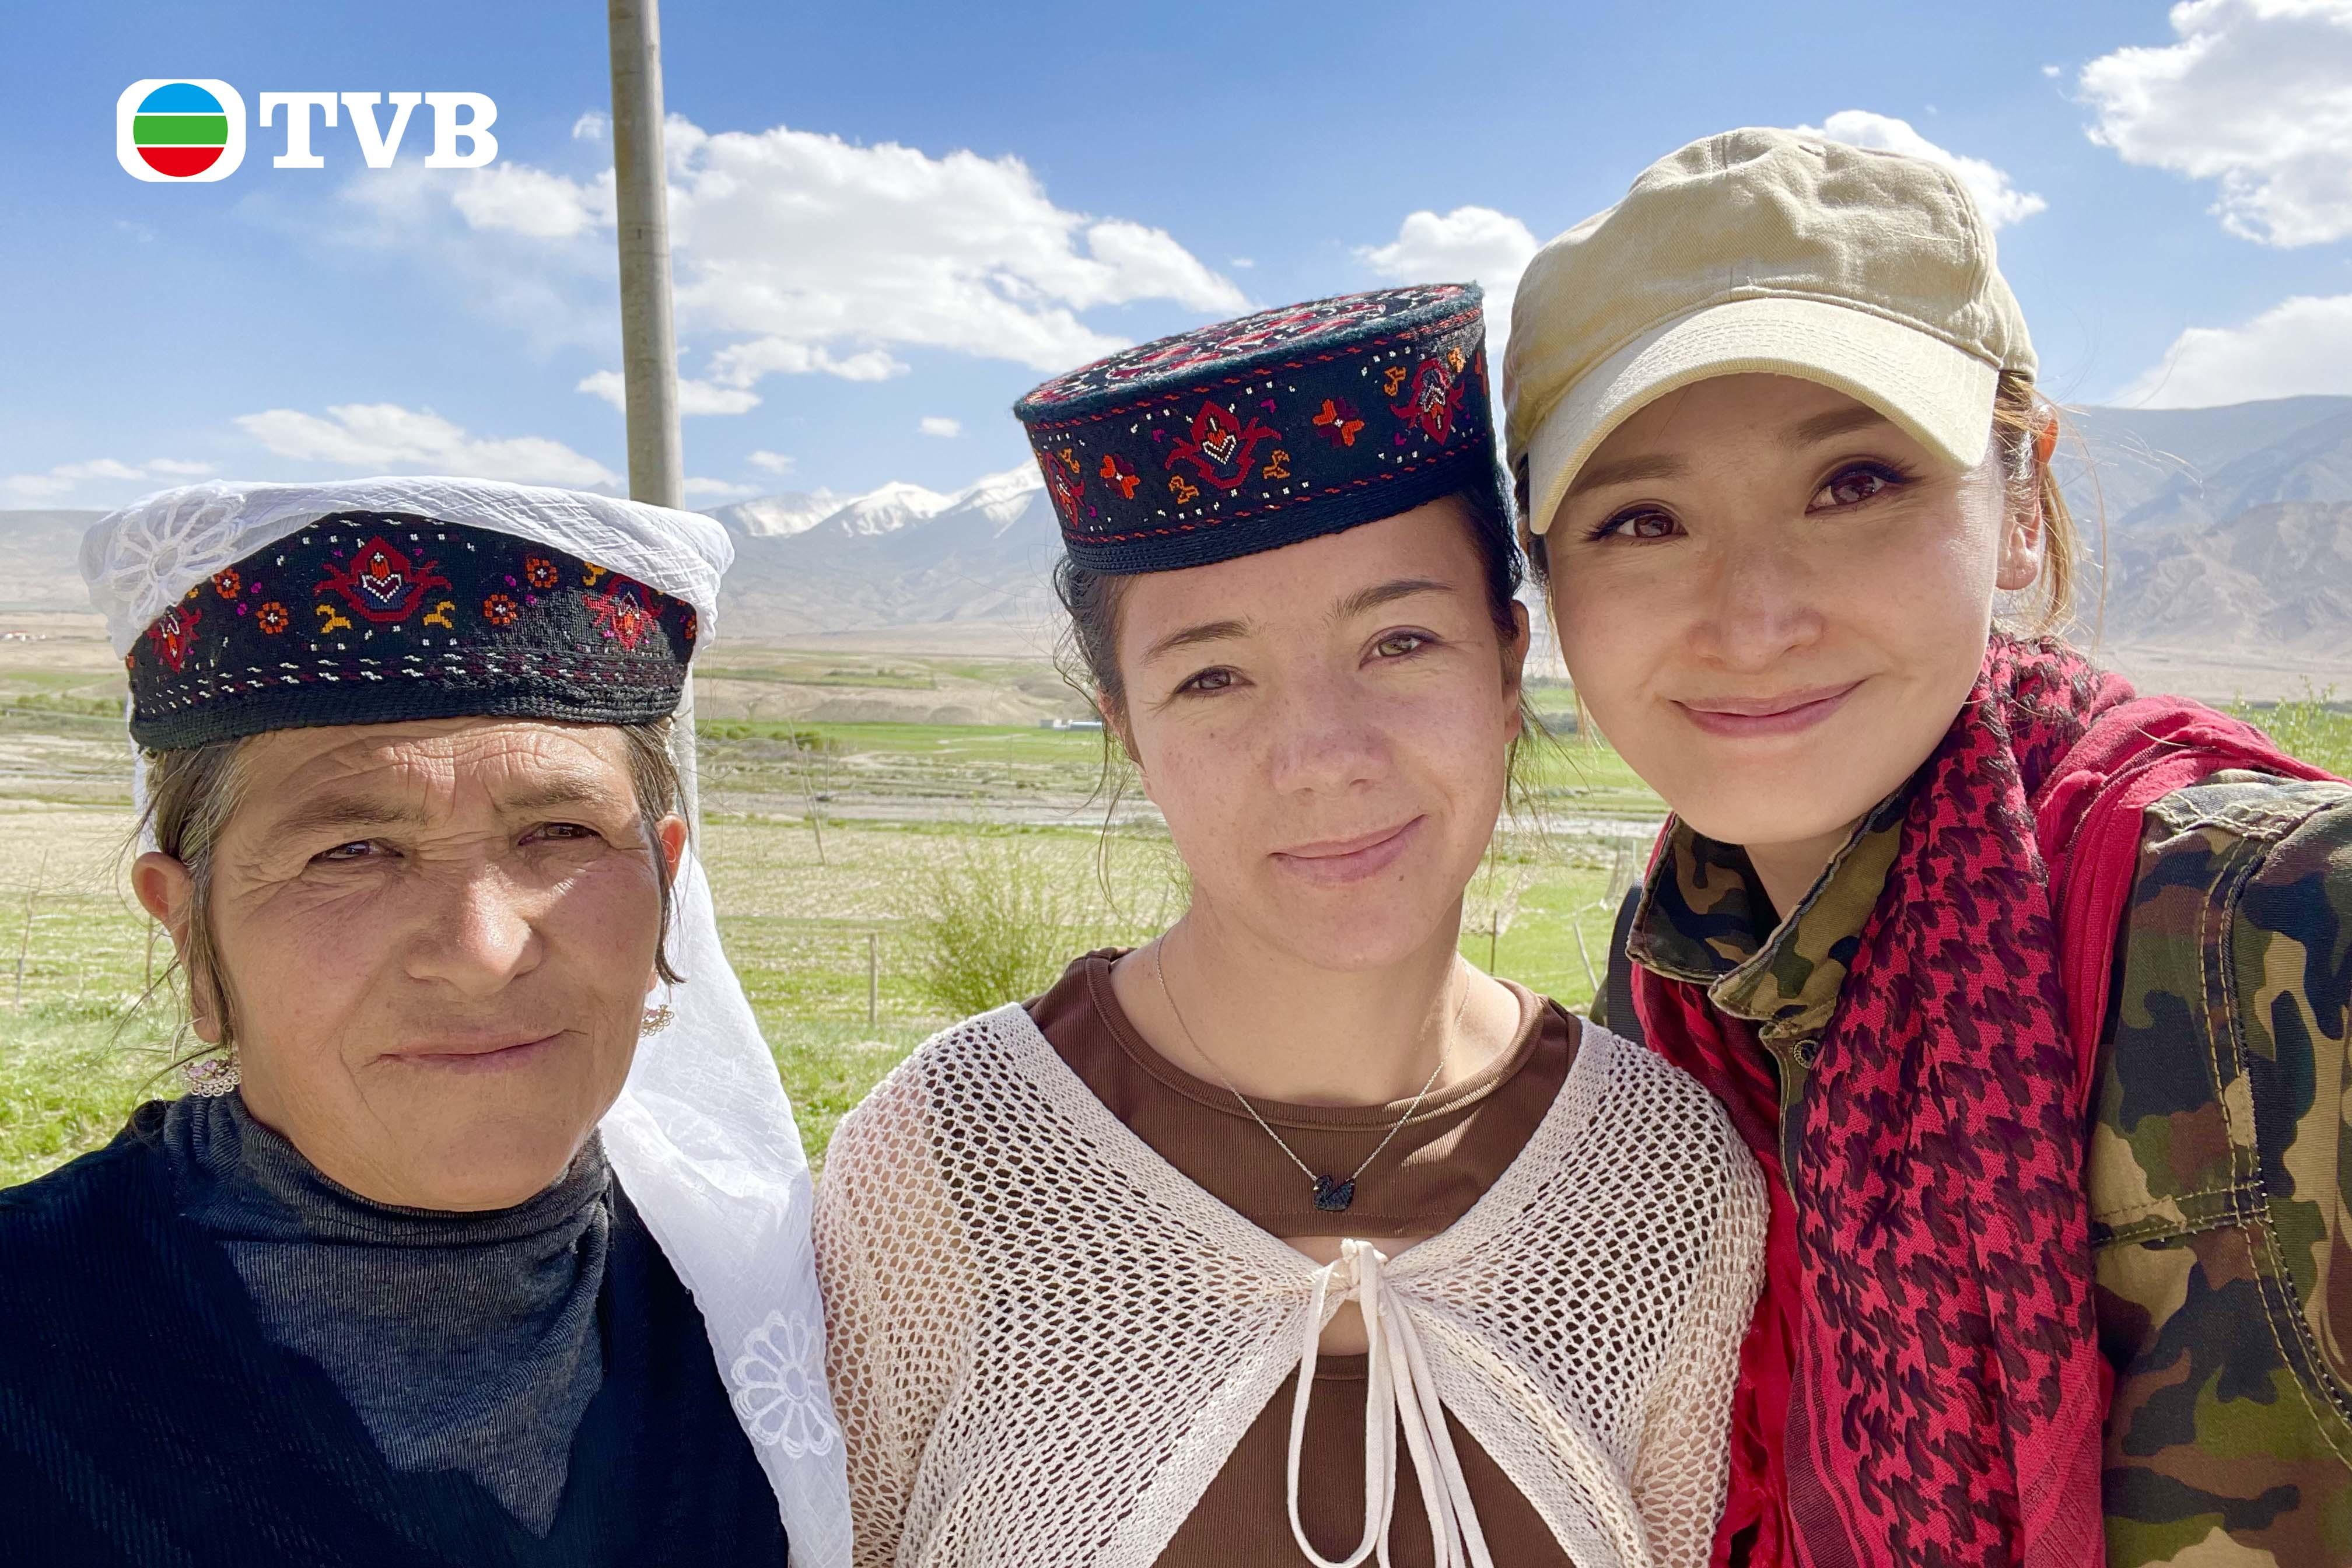 tvb纪录片《无穷之路3:无垠之疆》11月8日开播,聚焦美丽的新疆和